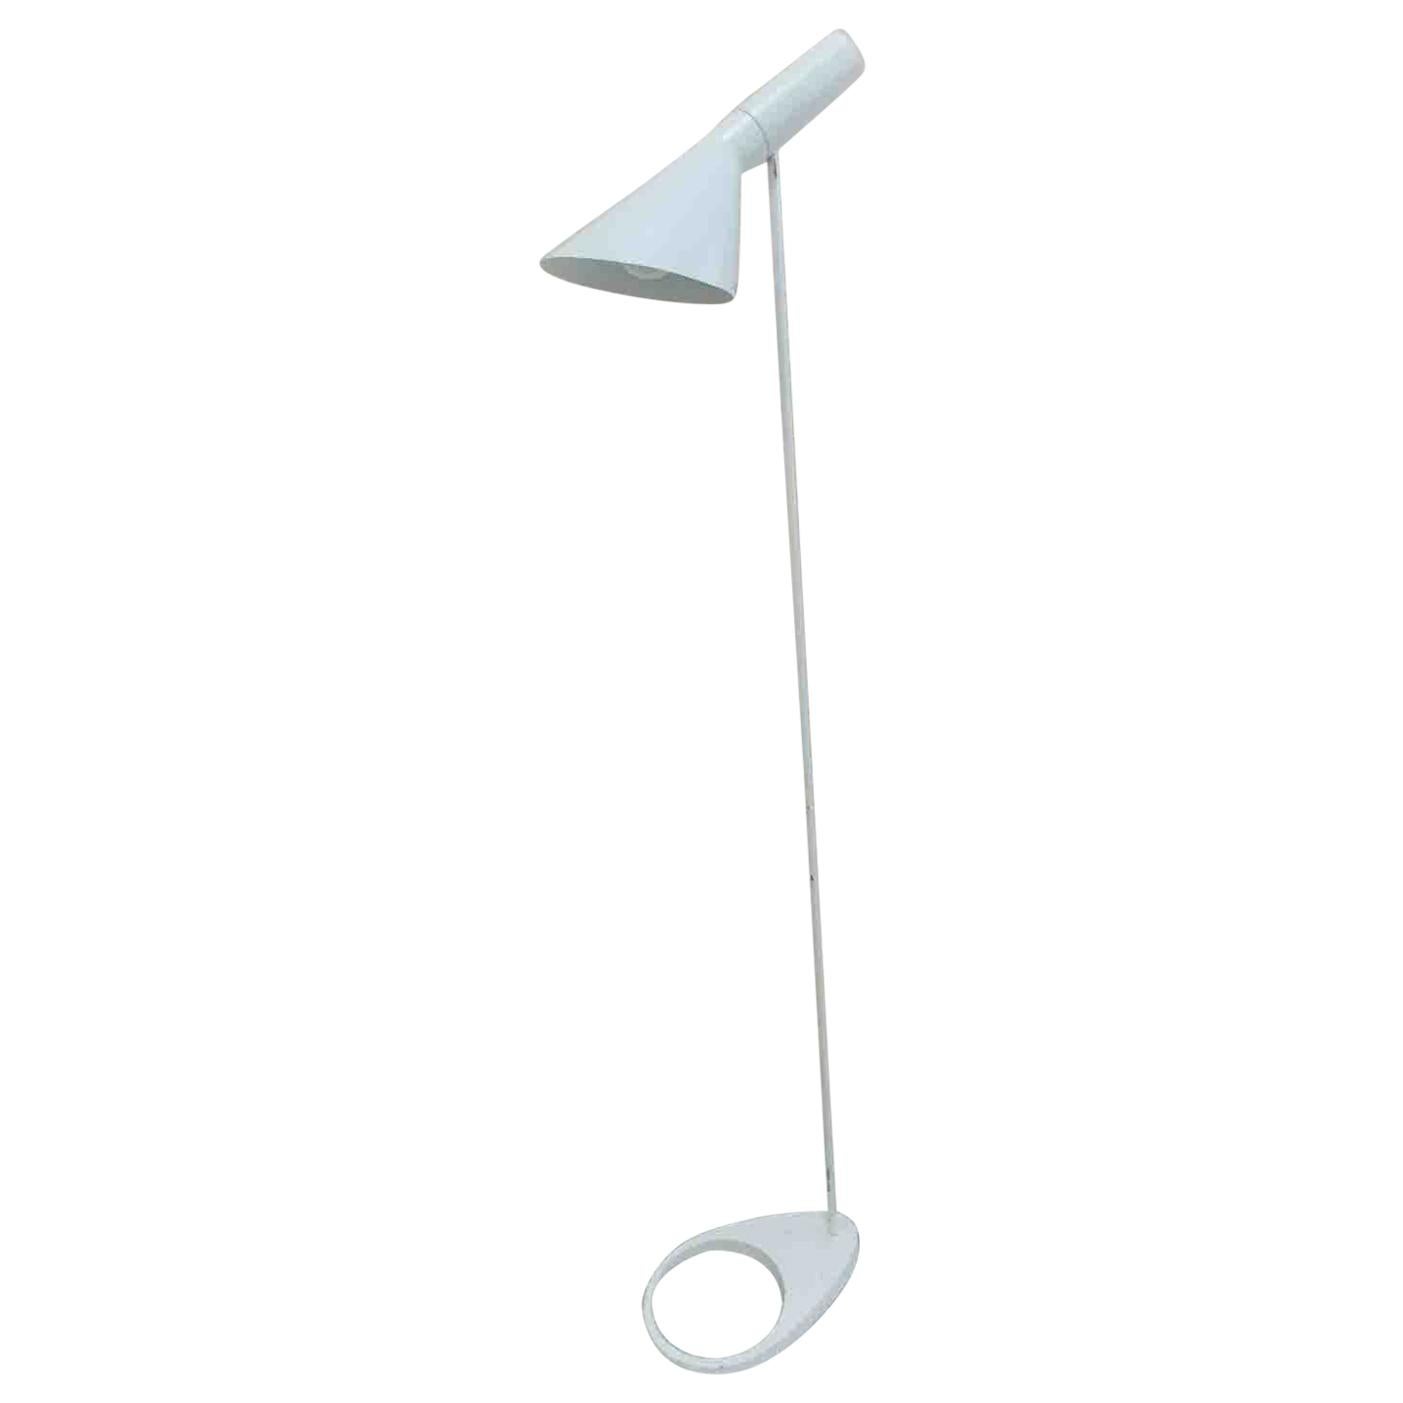 Arne Jacobsen Visor Lamp